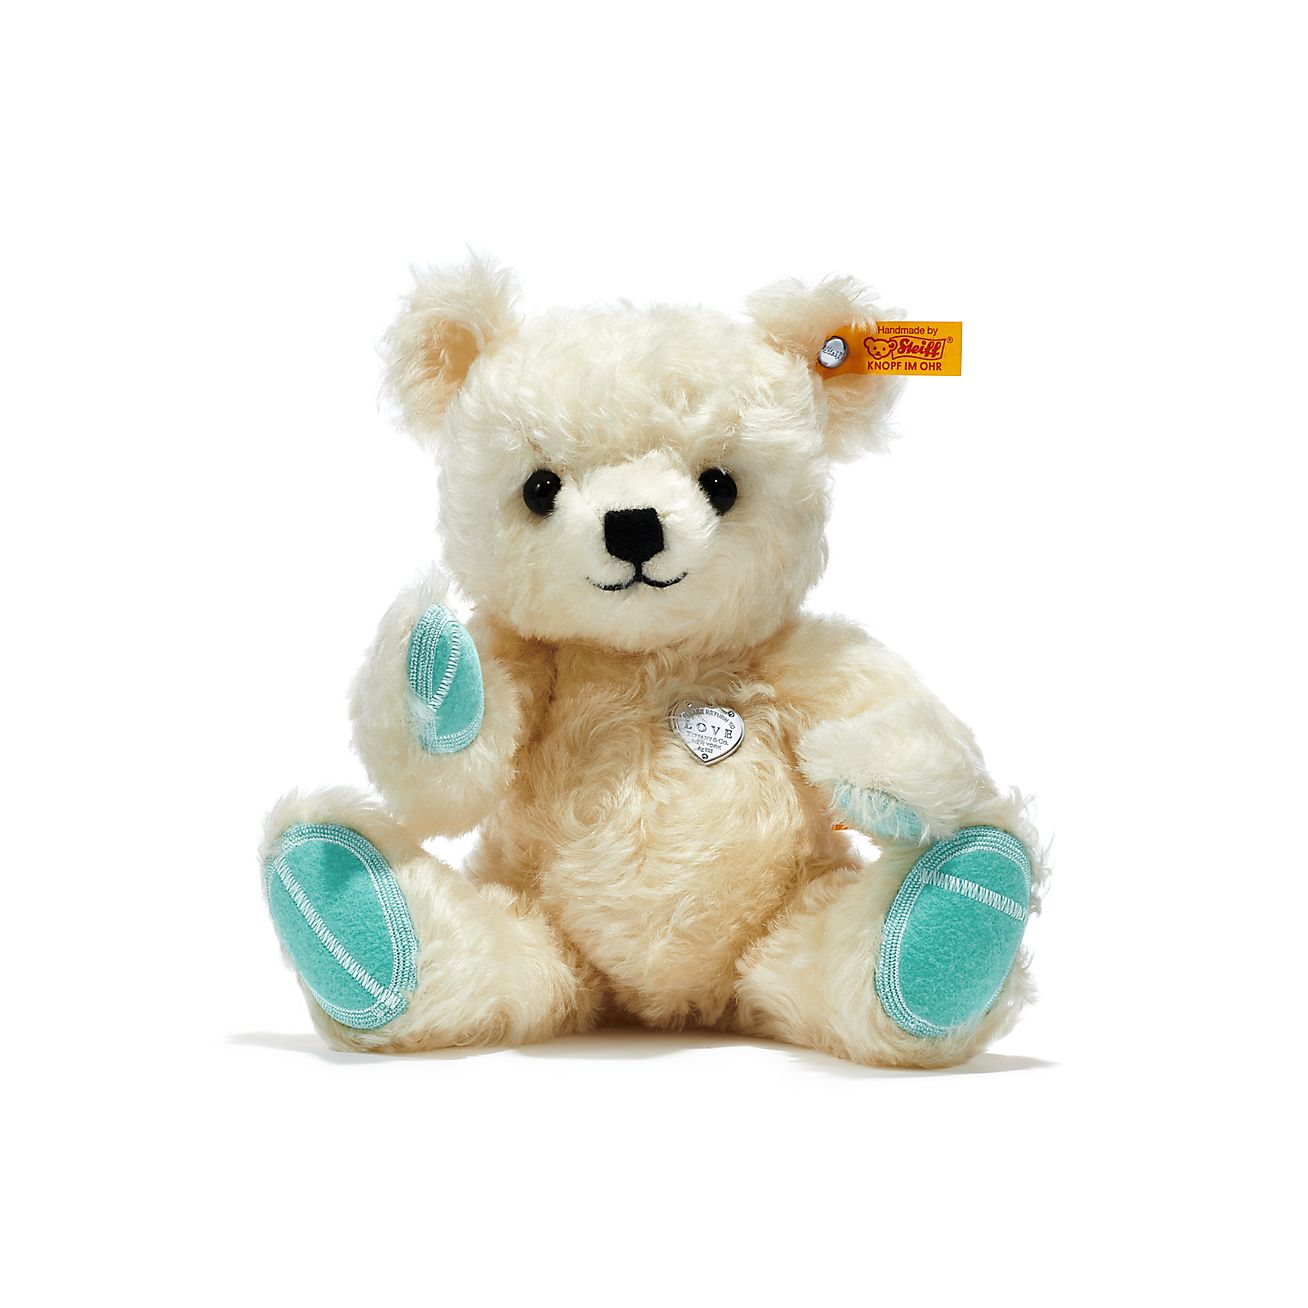 Tiffany® Love holiday teddy bear 